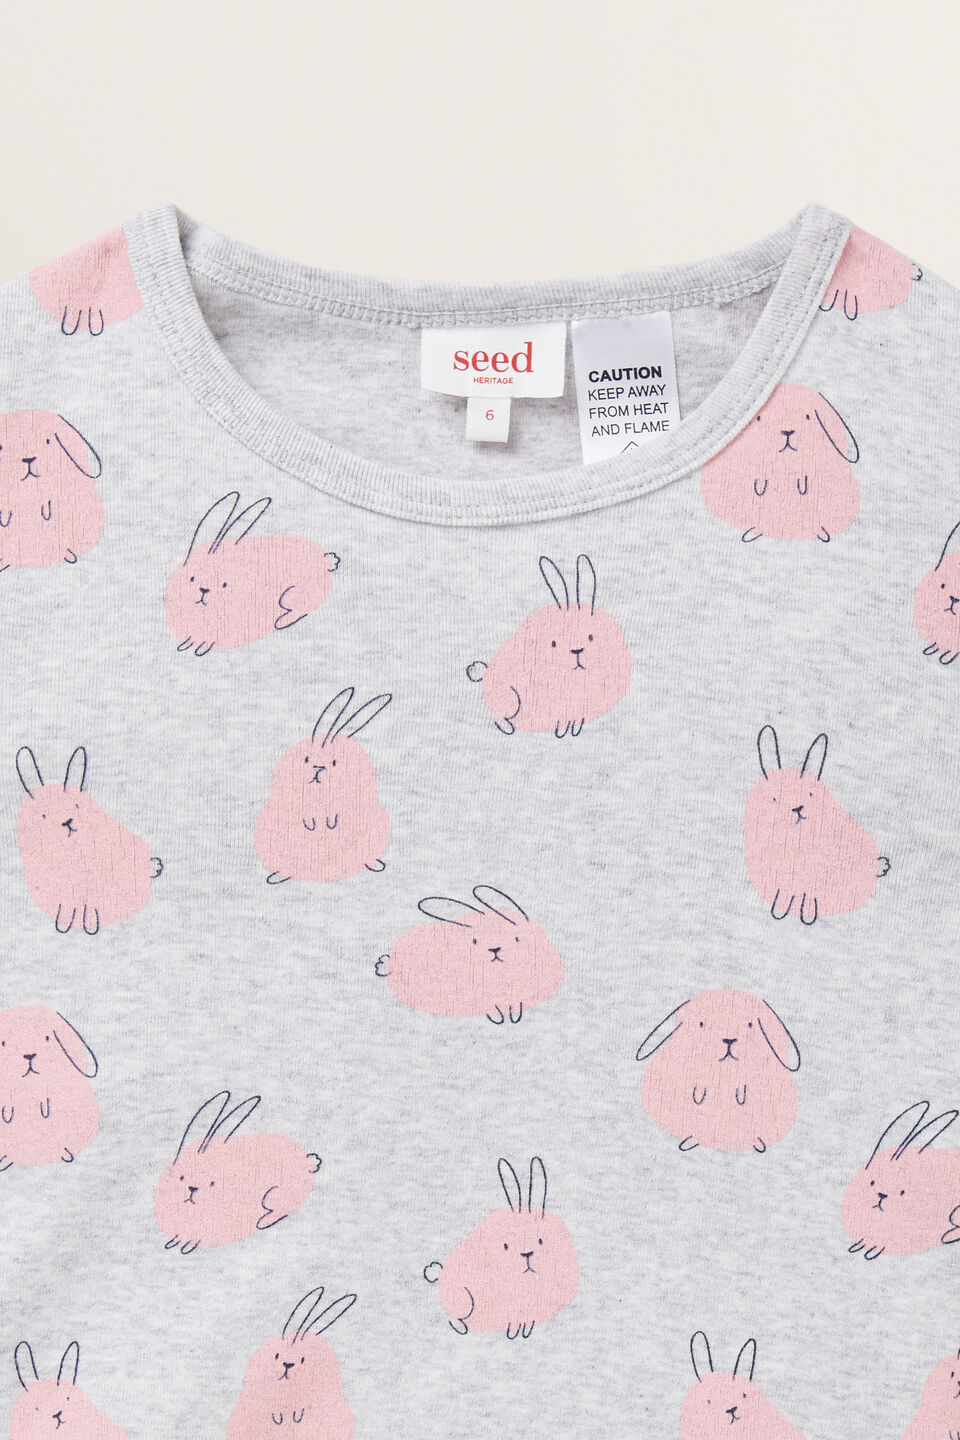 Cute Bunny Pyjamas  